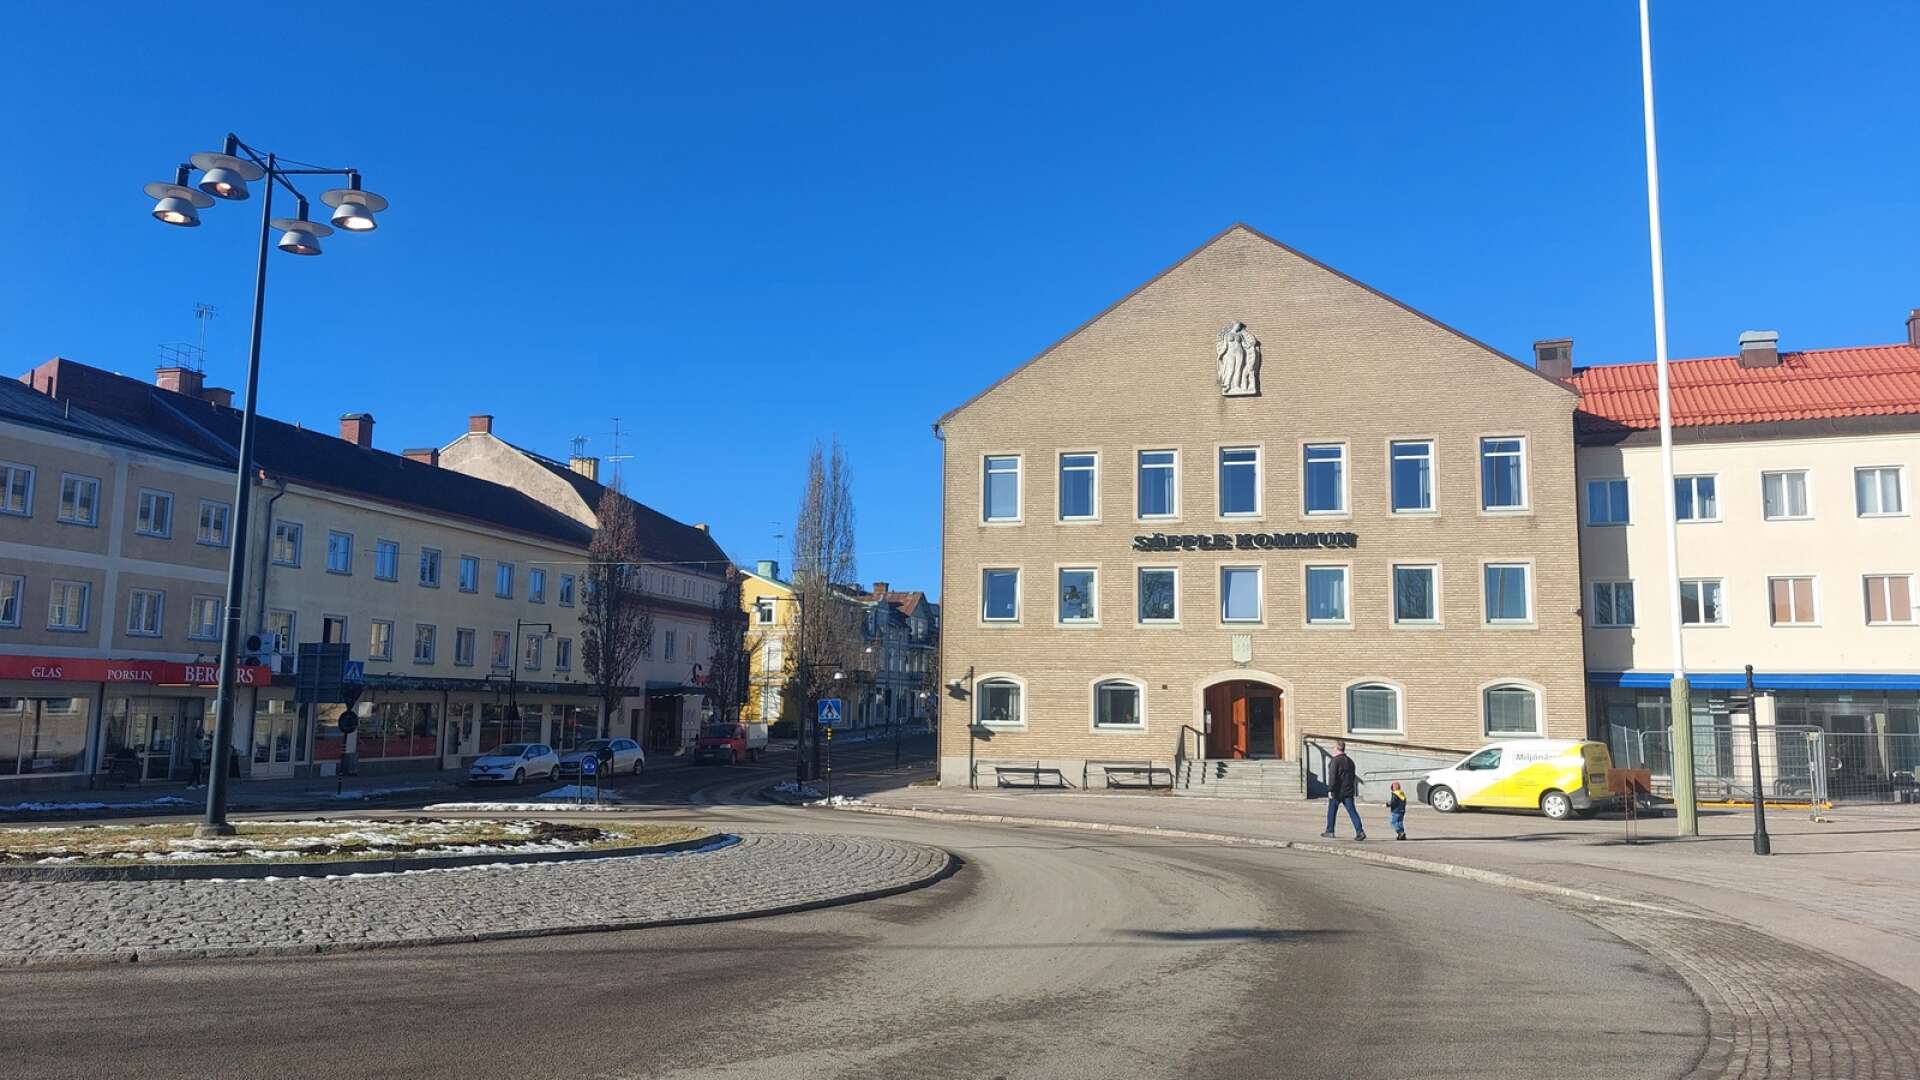 Säffle stadshus stod klart 1954 och fyllde inte bara en administrativ funktion, utan hade ett viktigt symbolvärde för Säffle som ny stad.